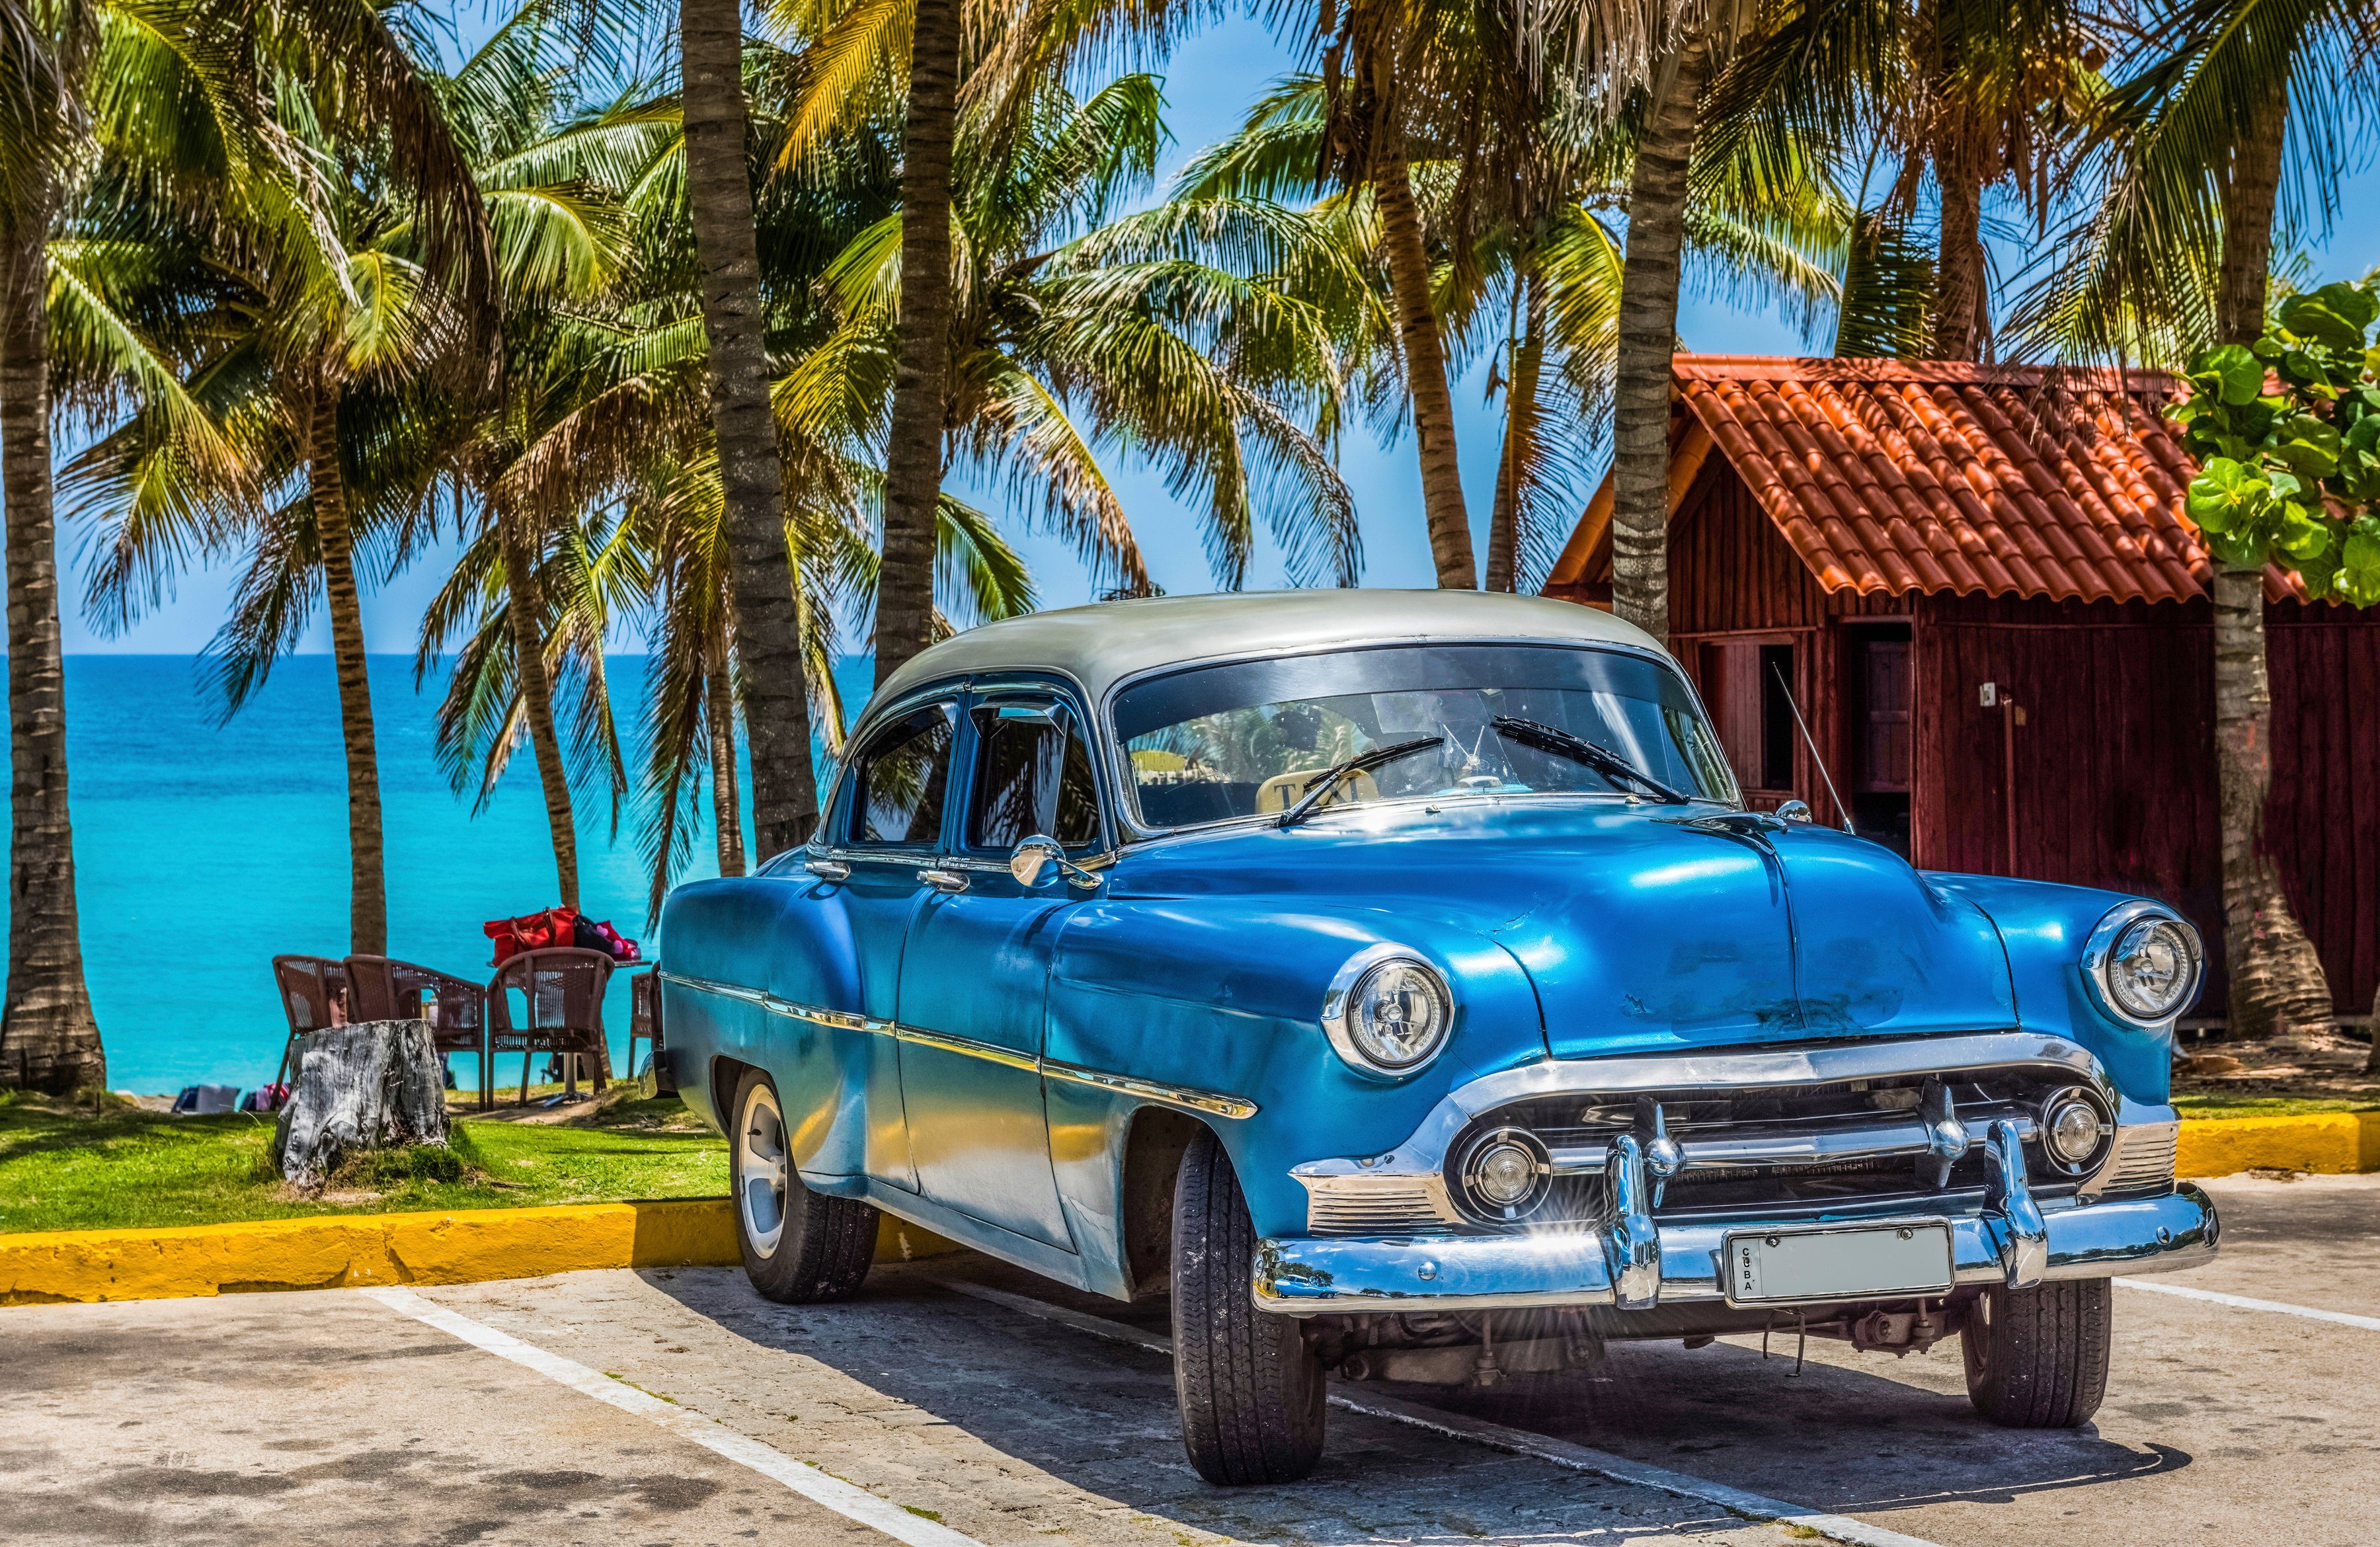 KUBA OLDTIMER-HAVANNA AUTO Fototapete MEER PALMEN STRAND Papermoon VINTAGE